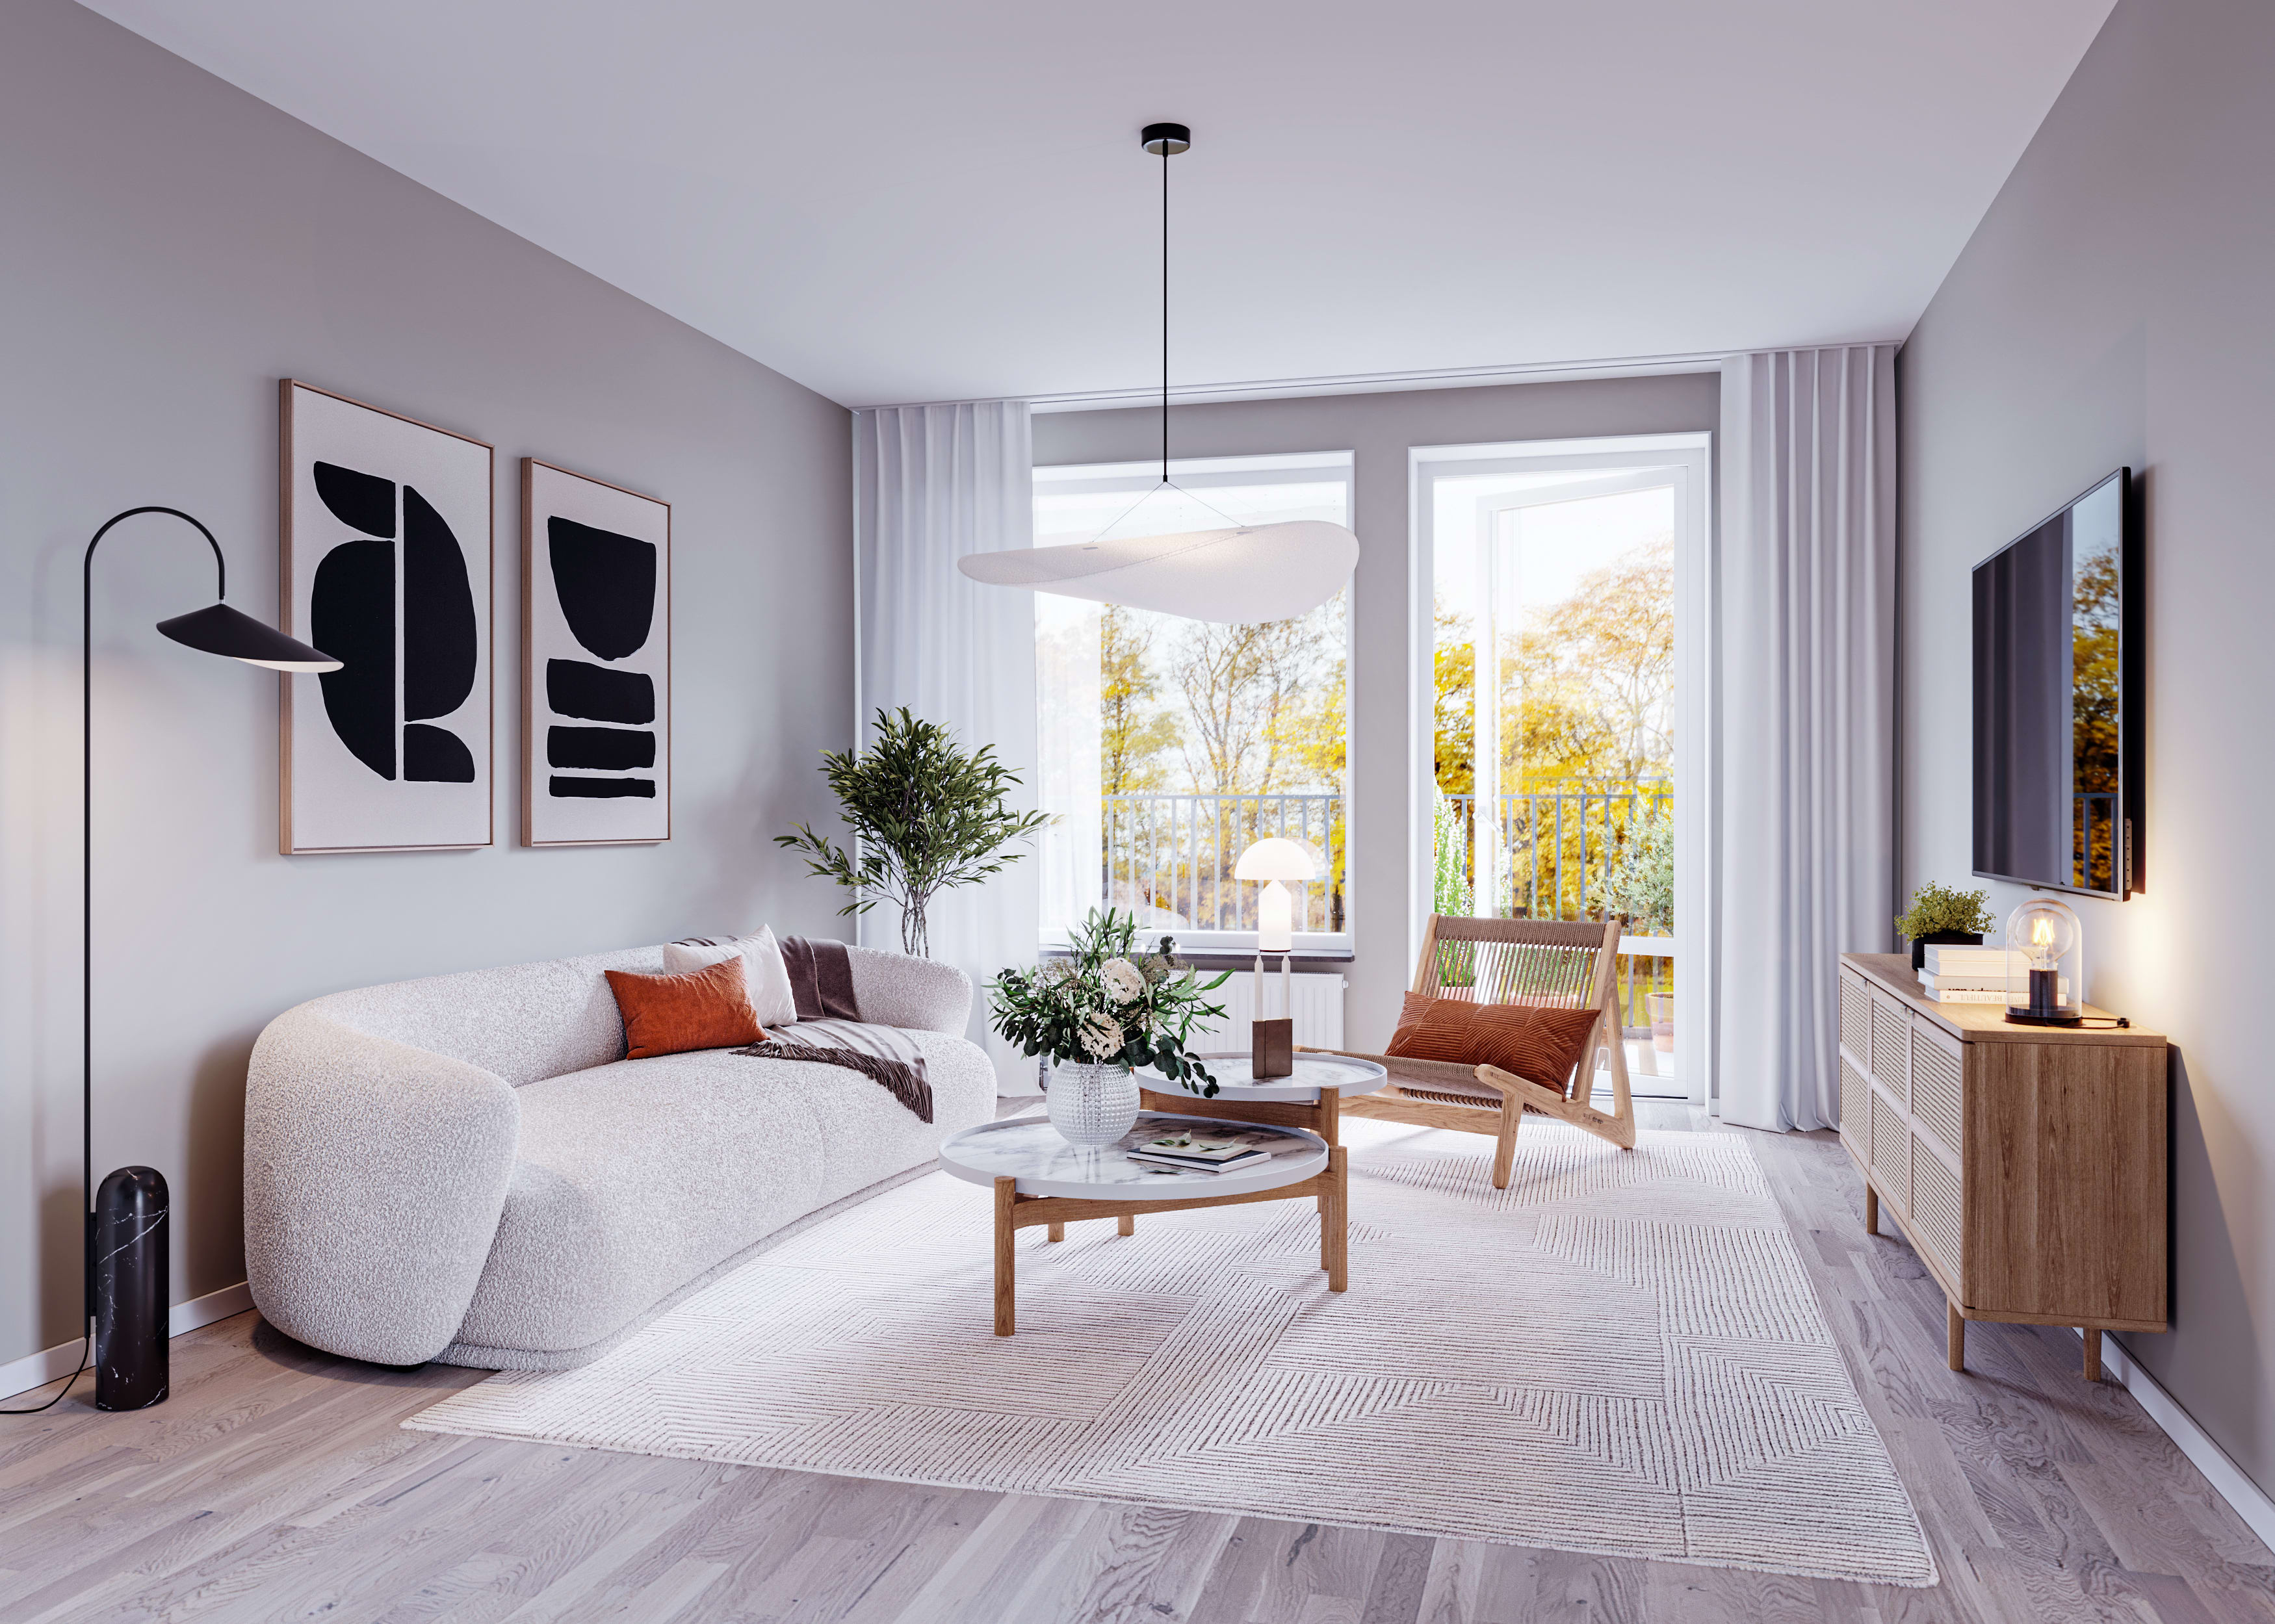 Ljust och trevligt vardagsrum i designlinje ”Höst” med vitlaserat golv och ljusgrå väggar. Fönsterdörr ut till balkong för maximalt ljusinsläpp (visionsbild).